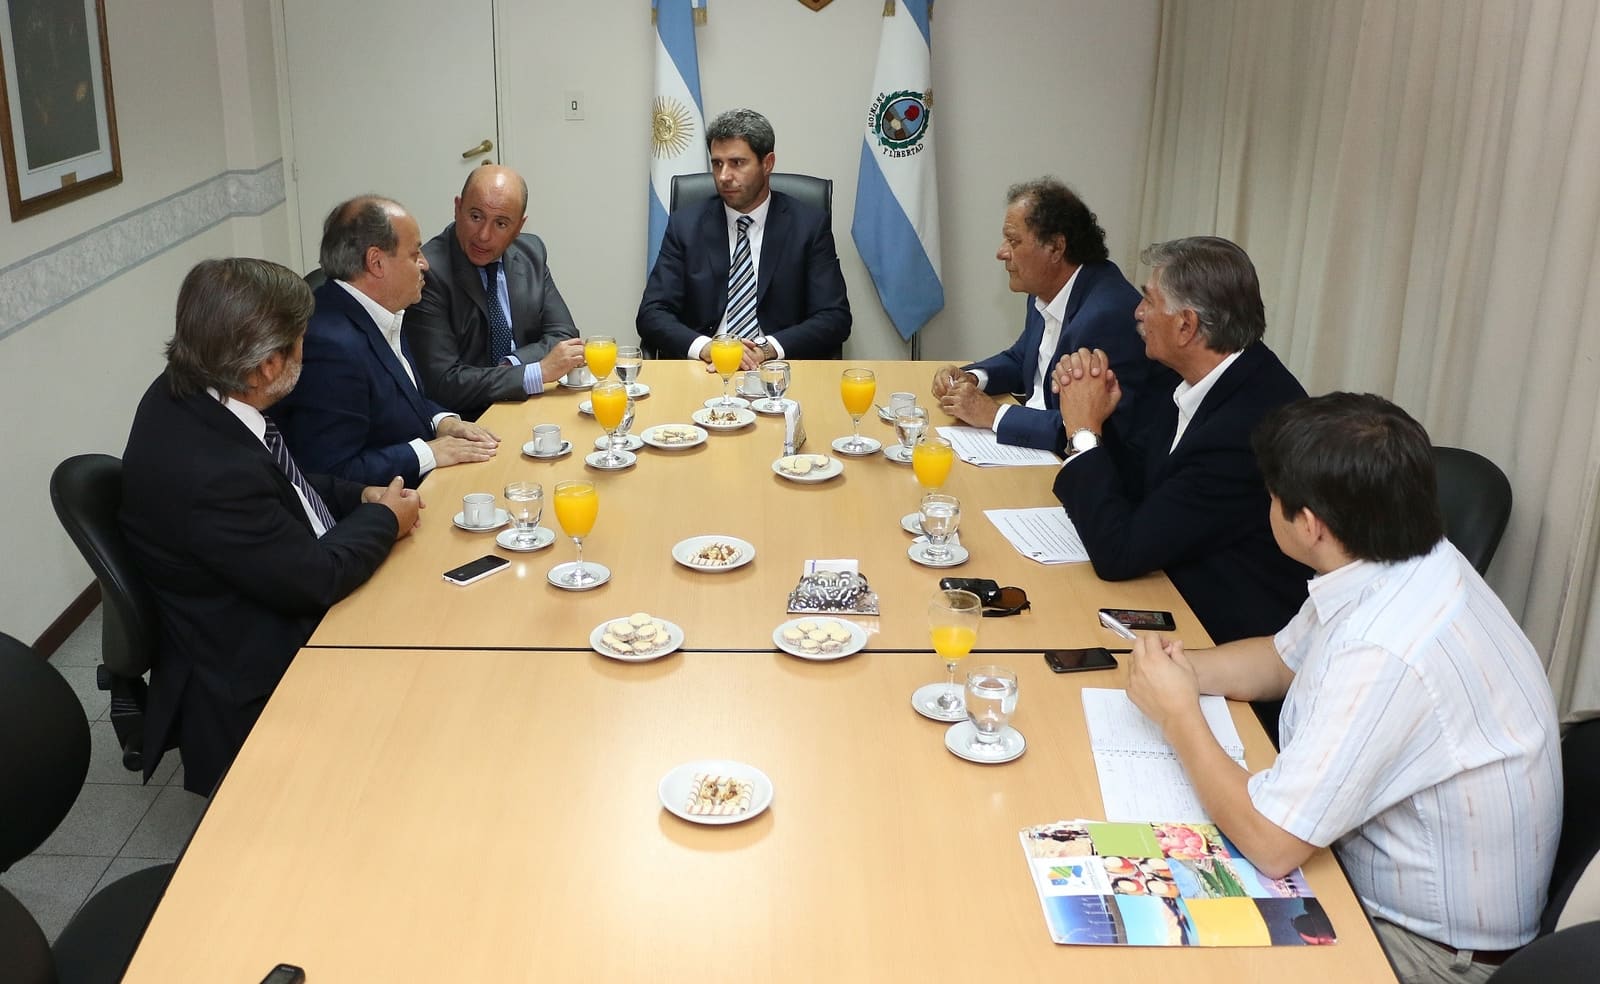 Representantes chilenos se reunieron con el vicegobernador Sergio Uñac y el diputado provincial Pablo García Nieto.